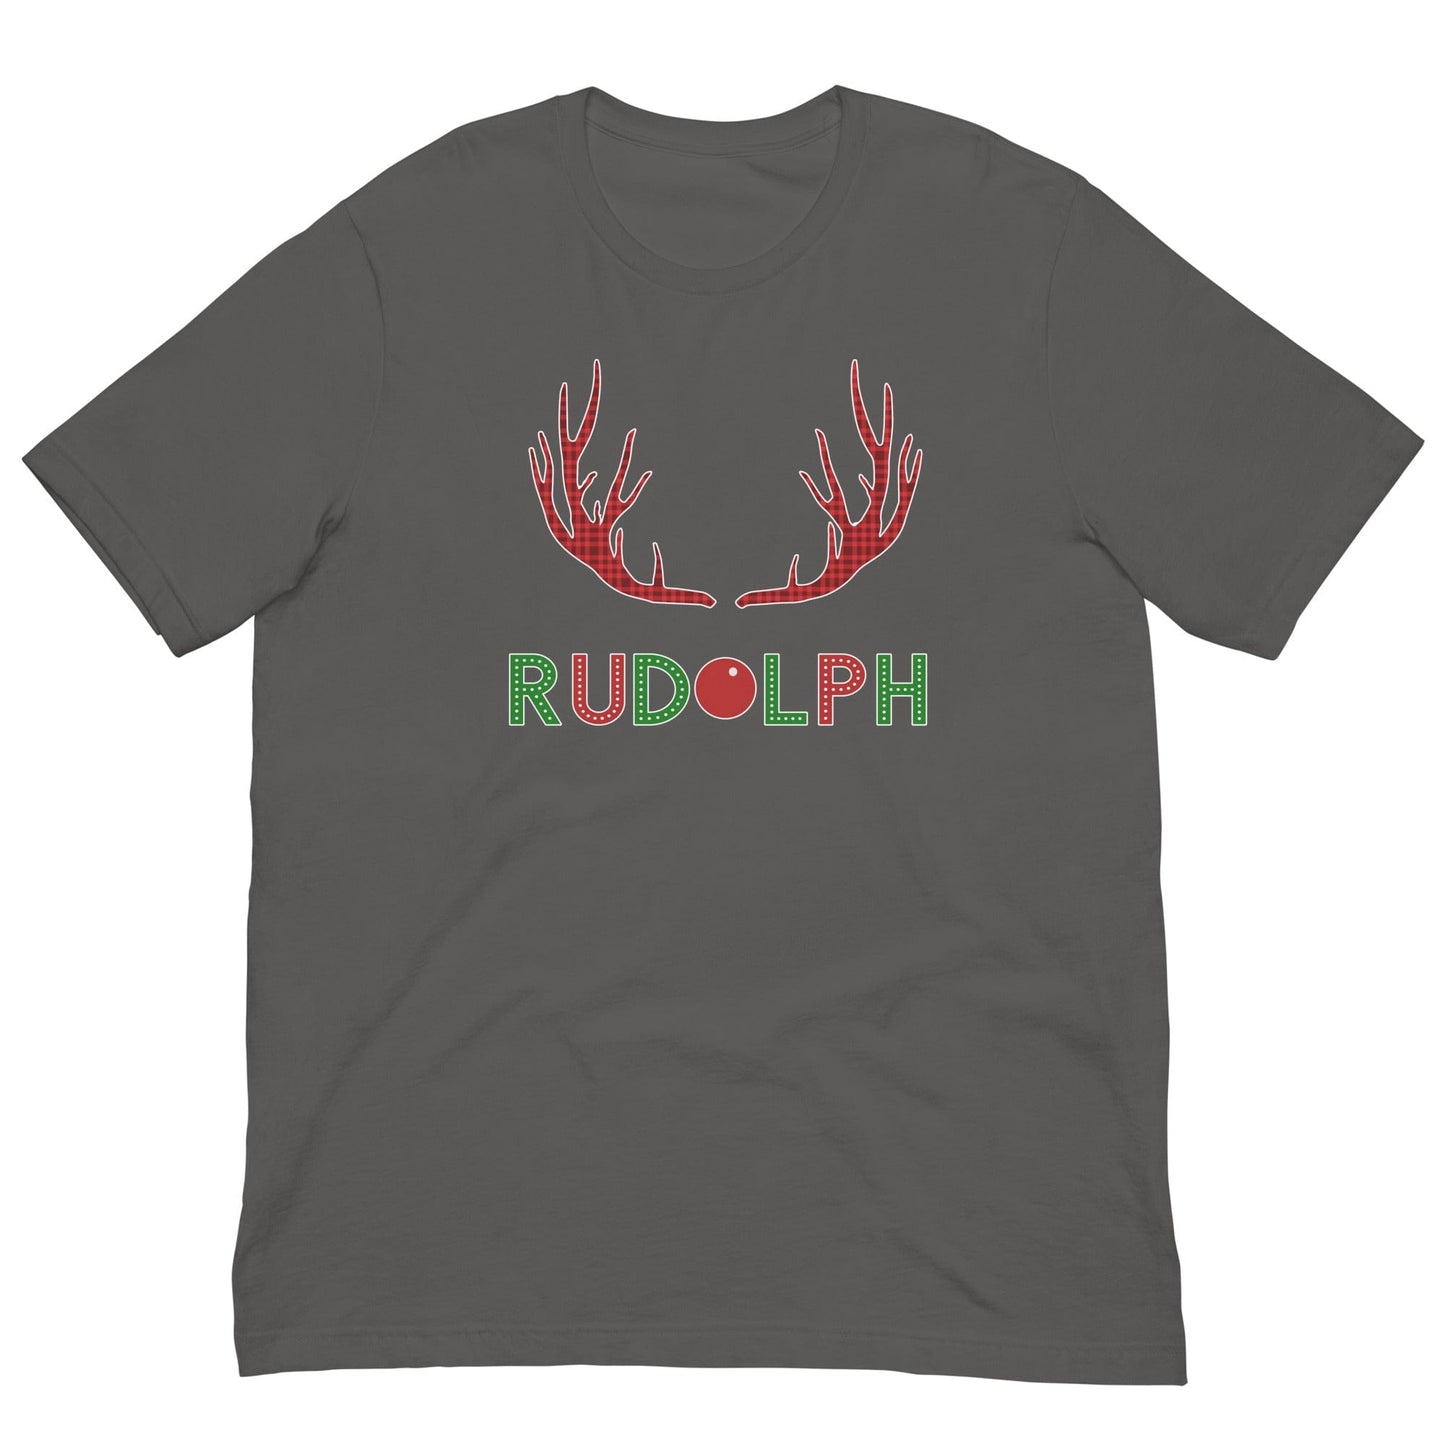 Rudolf the Reindeer T-shirt Asphalt / S